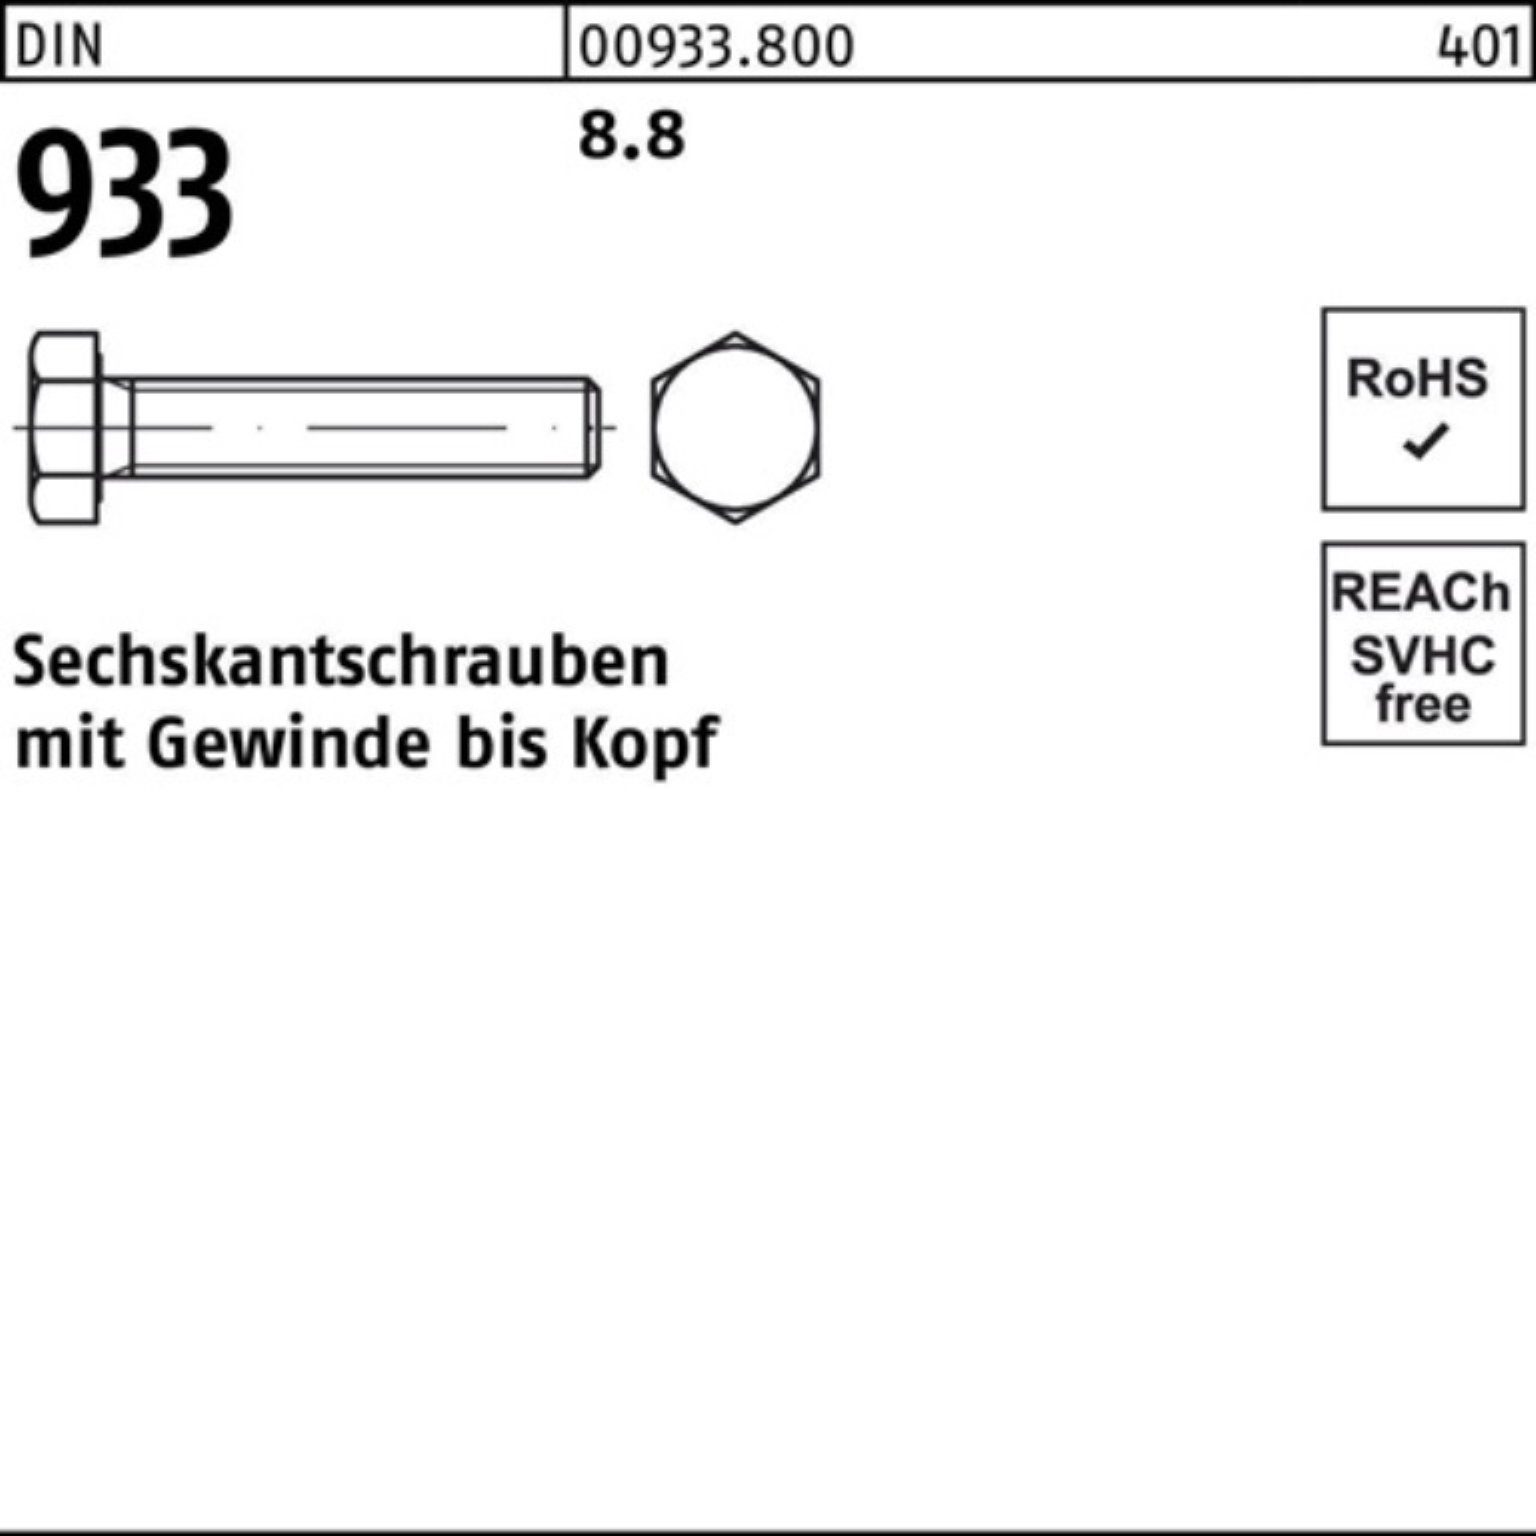 M5x 933 8 8.8 Reyher VG Sechskantschraube 933 500 DIN DIN Pack 500er Stück Sechskantschraube 8